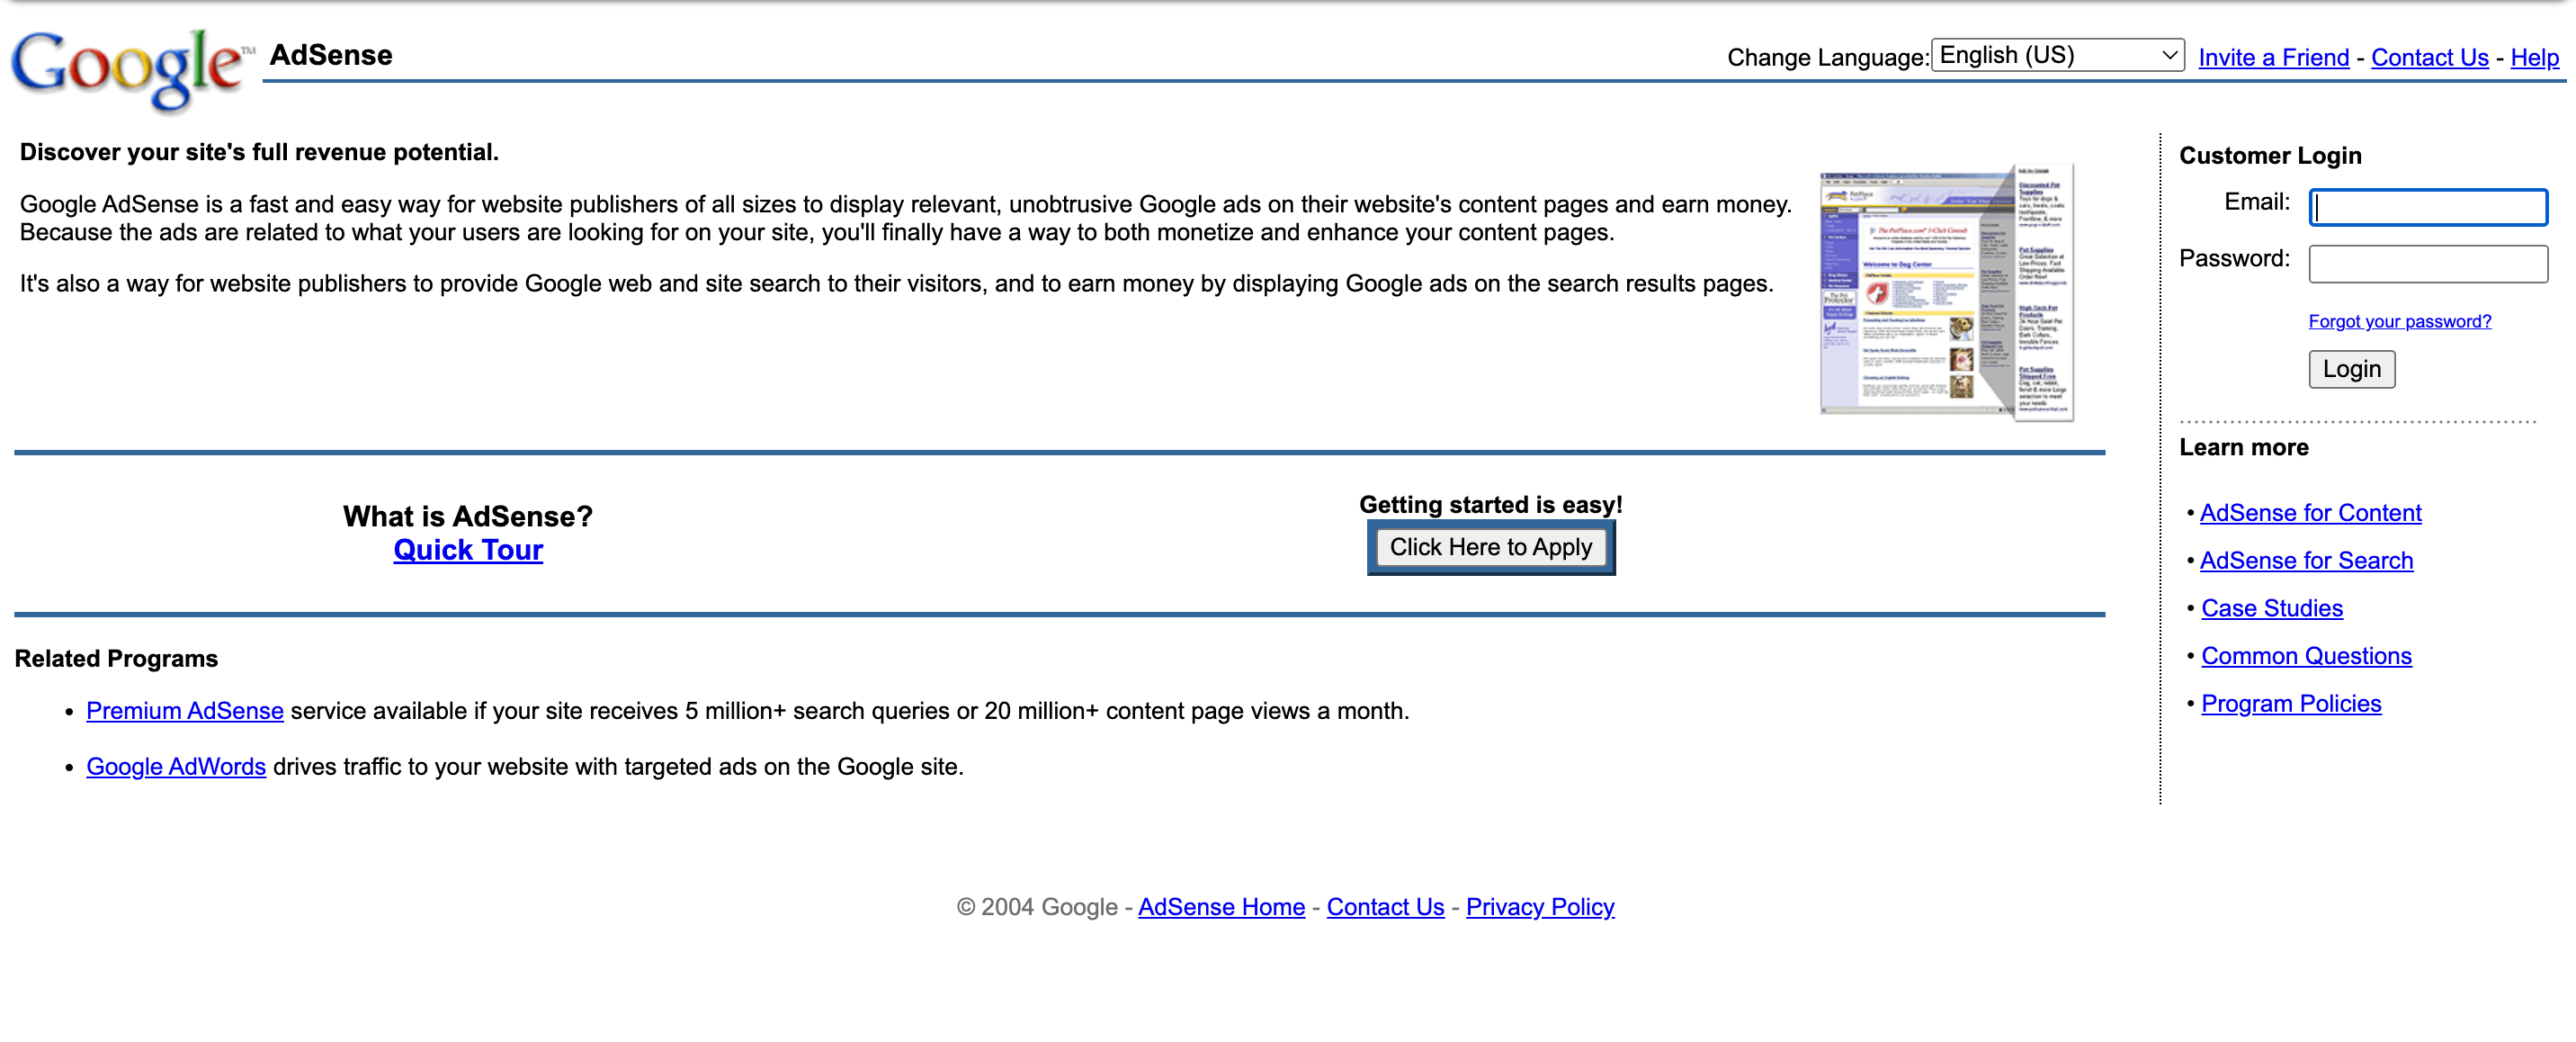 Google AdSense, 2003 - Way Back Machine